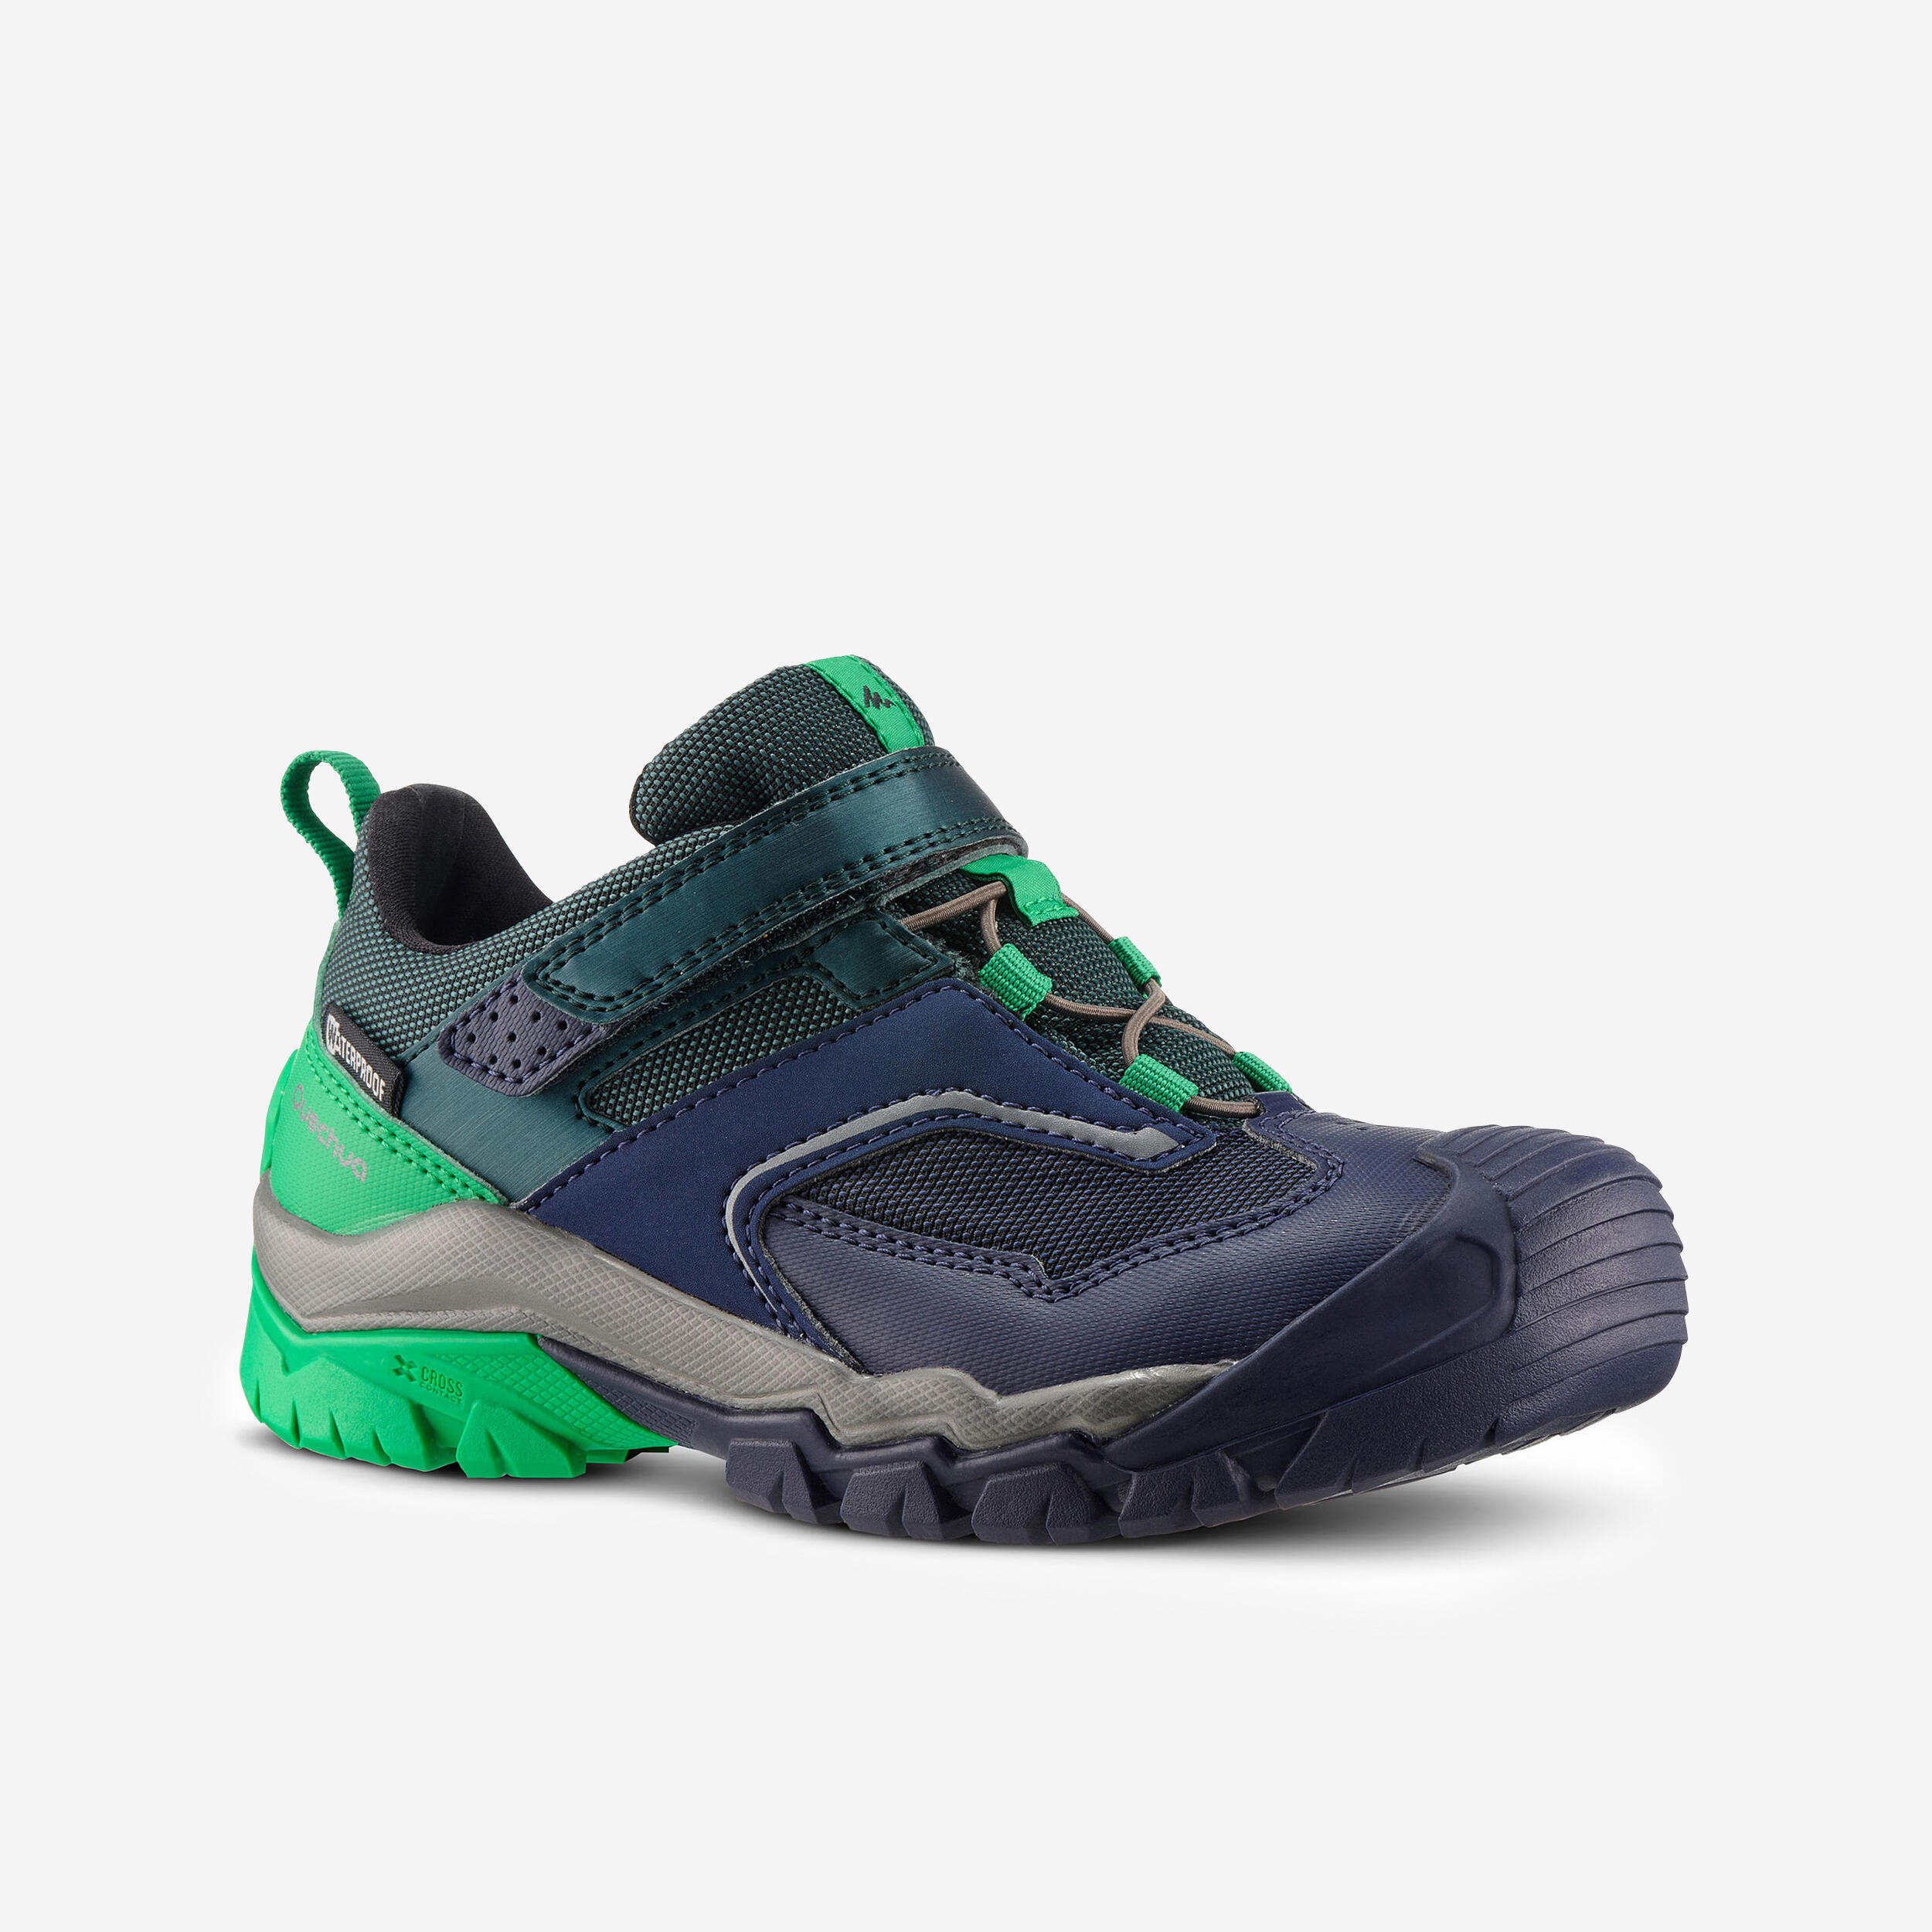 Chaussures de randonnée avec fermeture autoagrippante enfant – Crossrock vert - QUECHUA